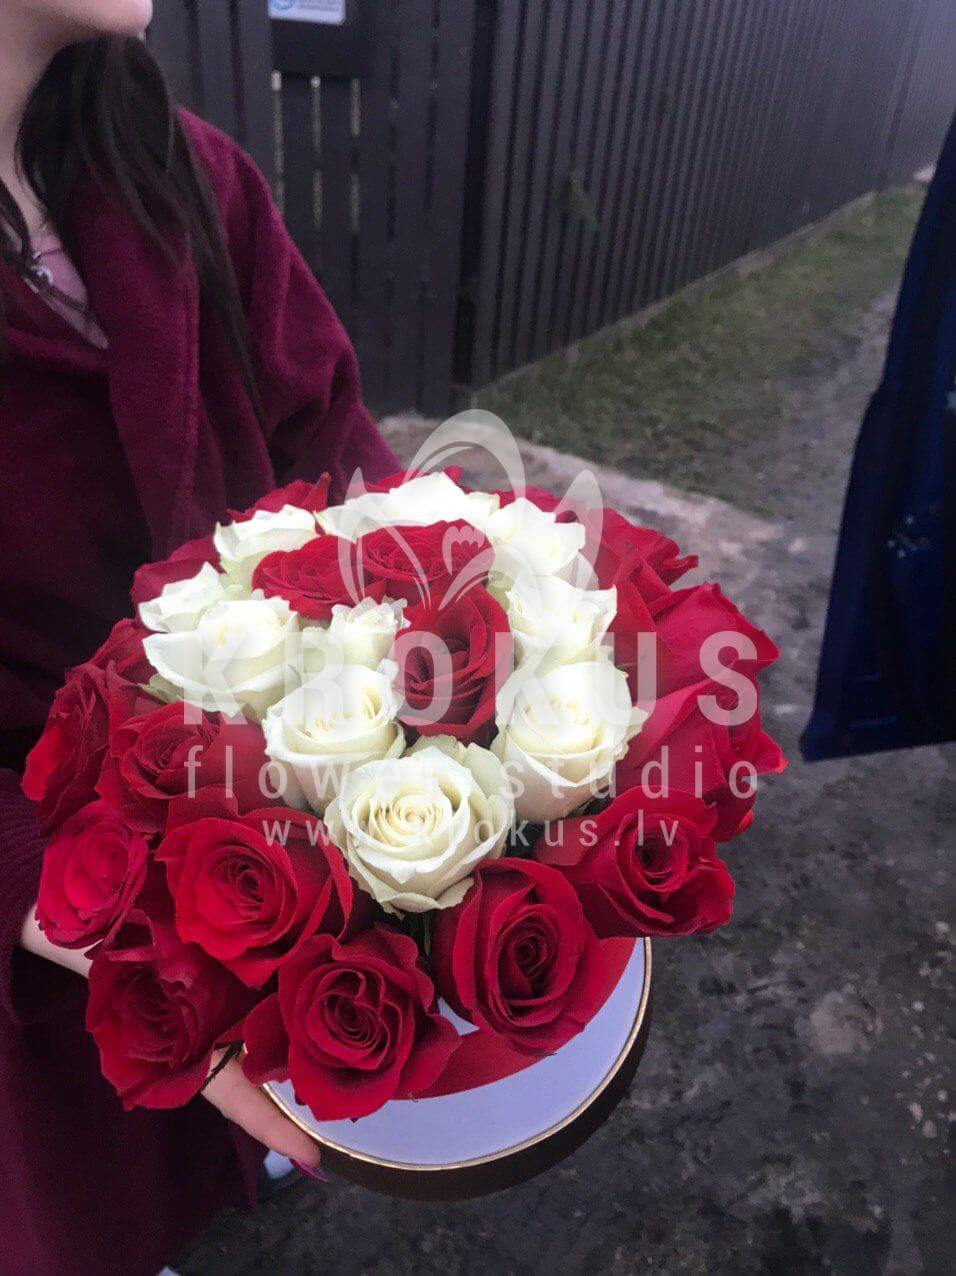 Доставка цветов в город Jēkabpils (стильная коробкабелые розыкрасные розы)